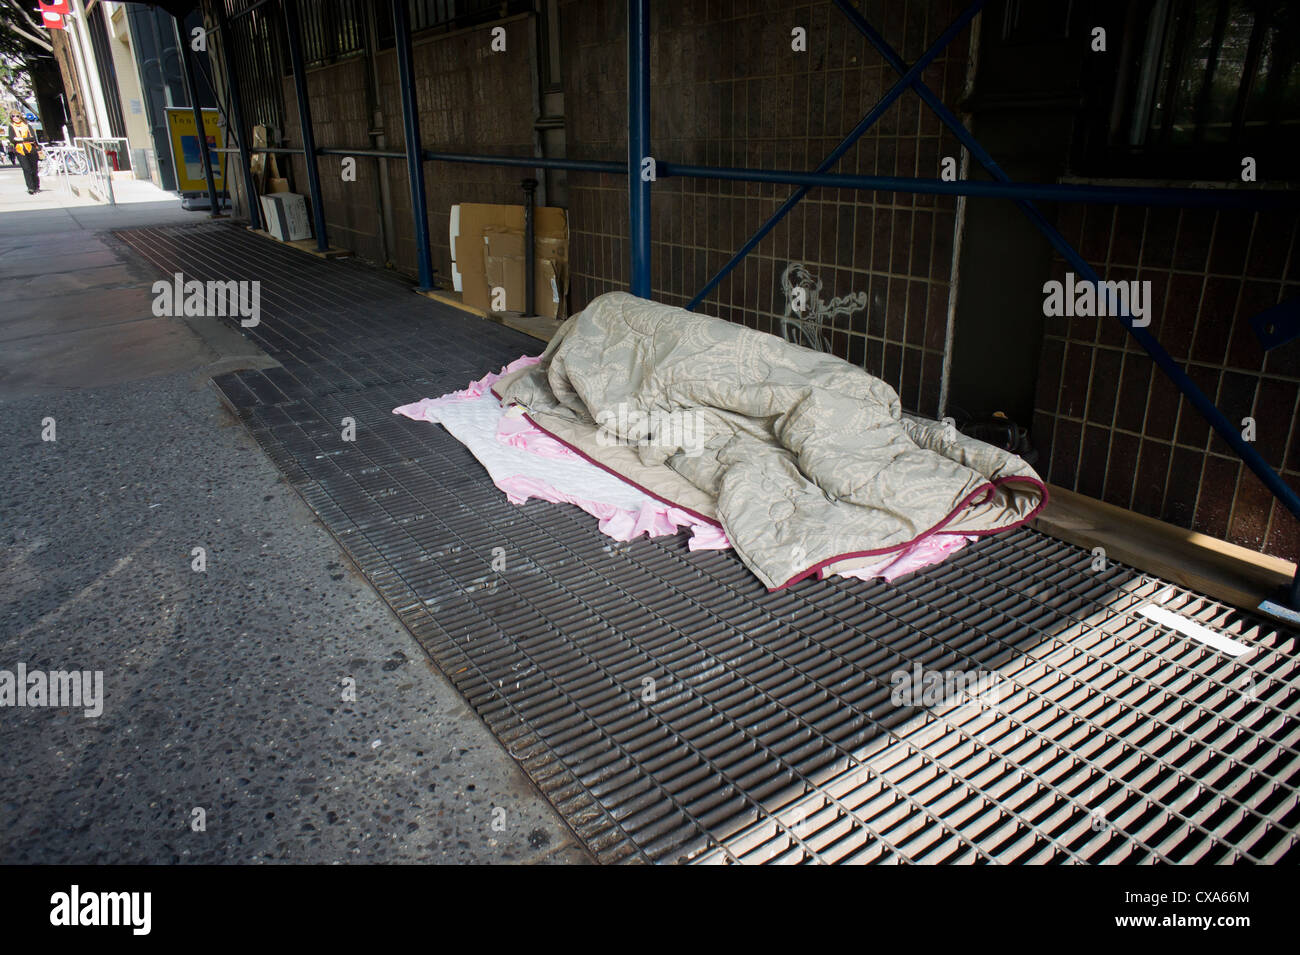 homeless-man-sleeping-on-a-vent-in-the-sidewalk-in-greenwich-village-CXA66M.jpg